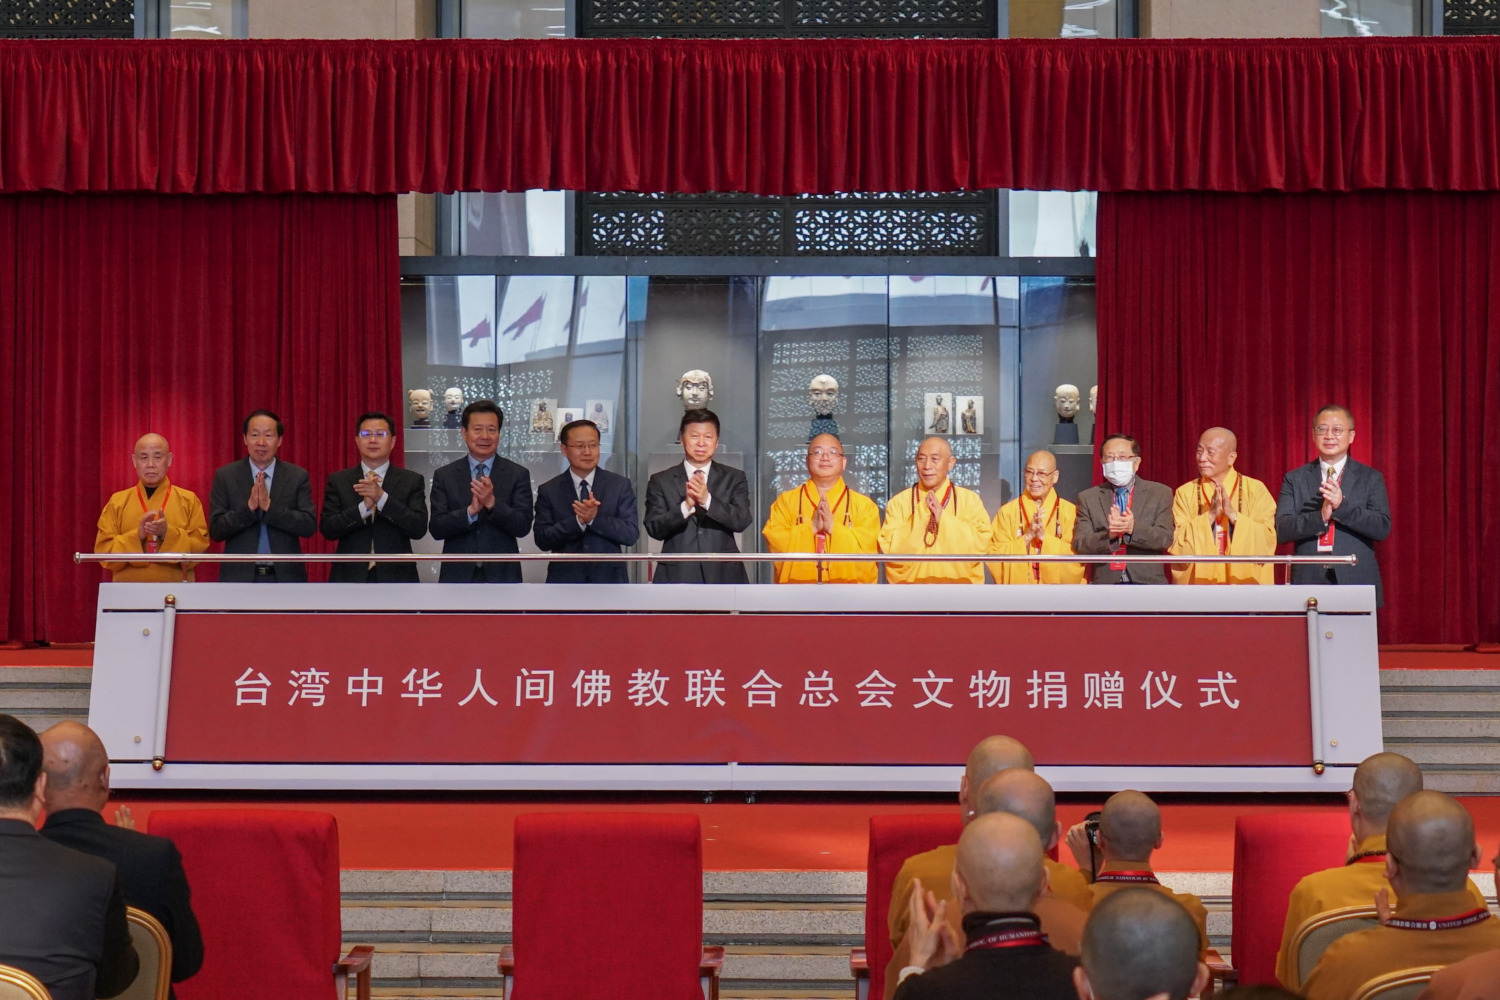 文物回歸│中國佛教聯合總會舉辦規模最大佛像捐贈儀式